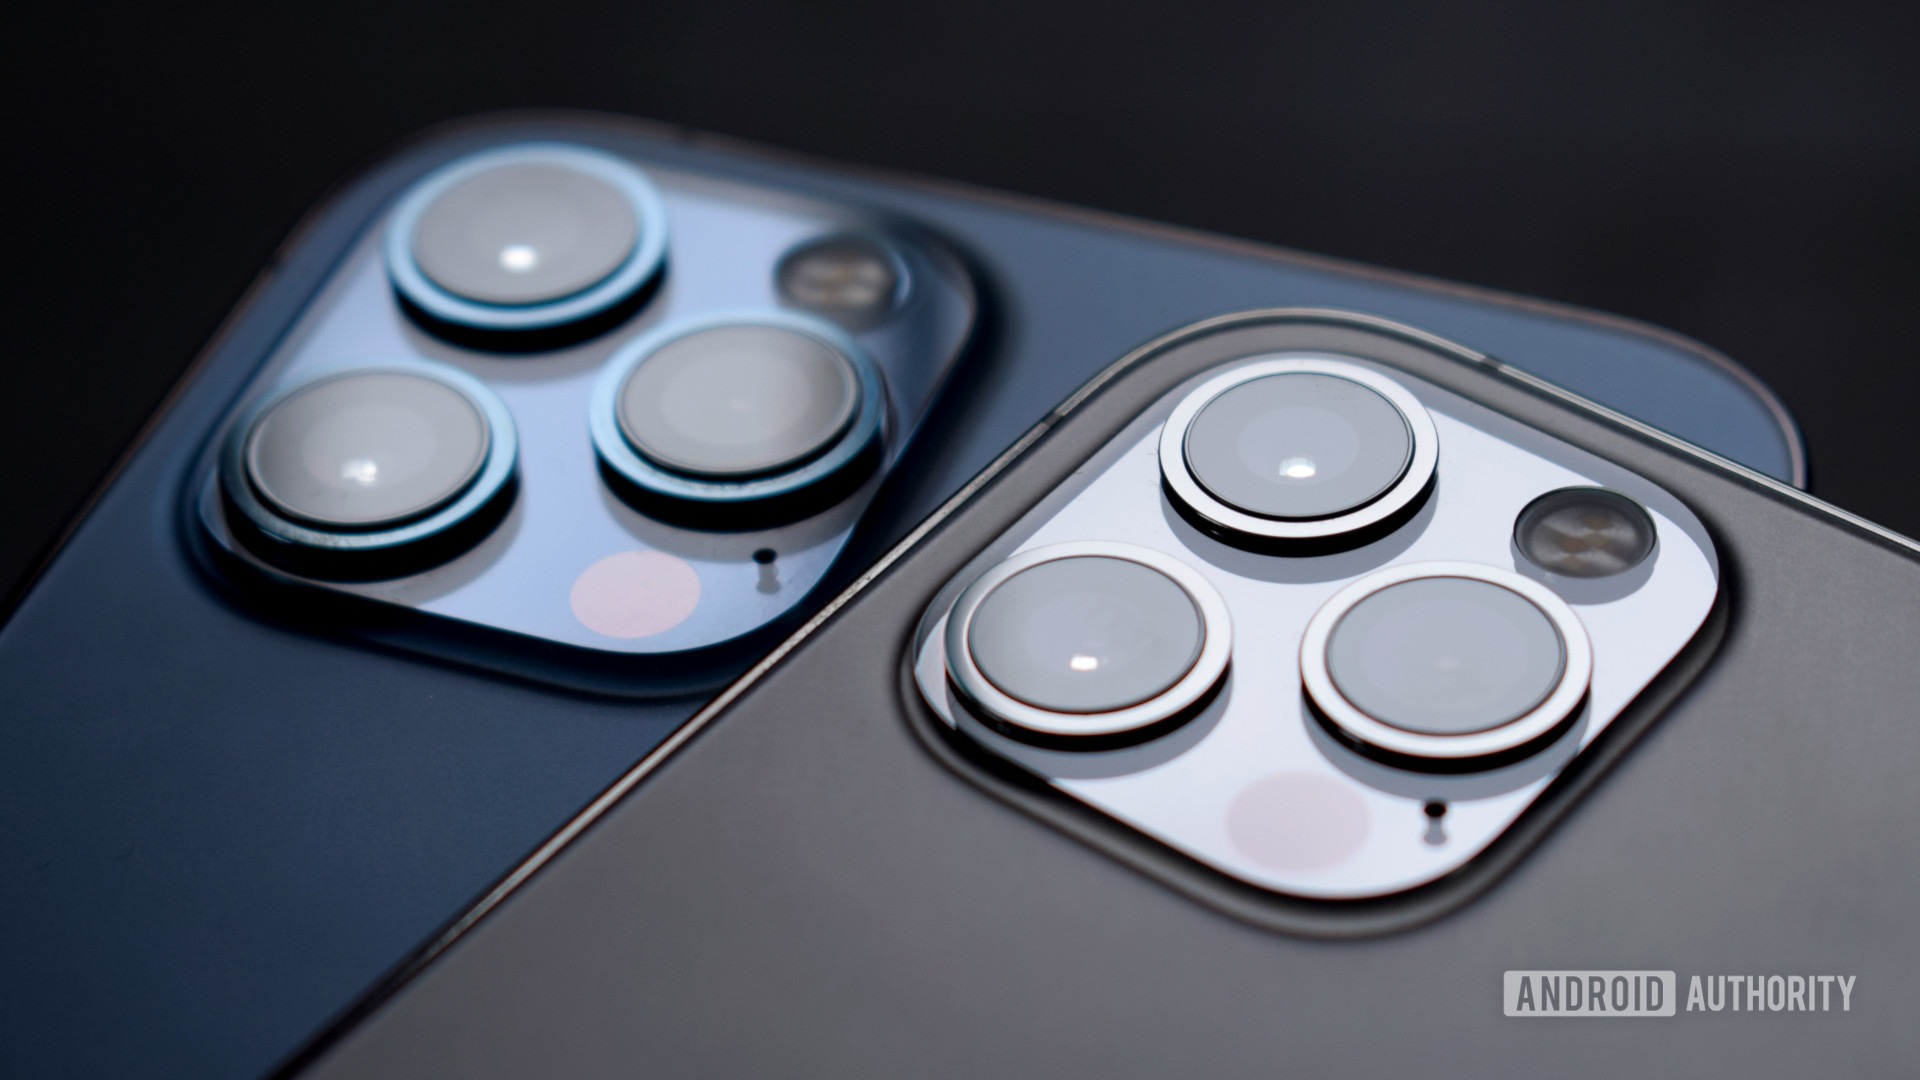 Báo cáo cho biết iPhone 13 sẽ có chống rung hình ảnh trên cảm biến ở tất cả các mẫu